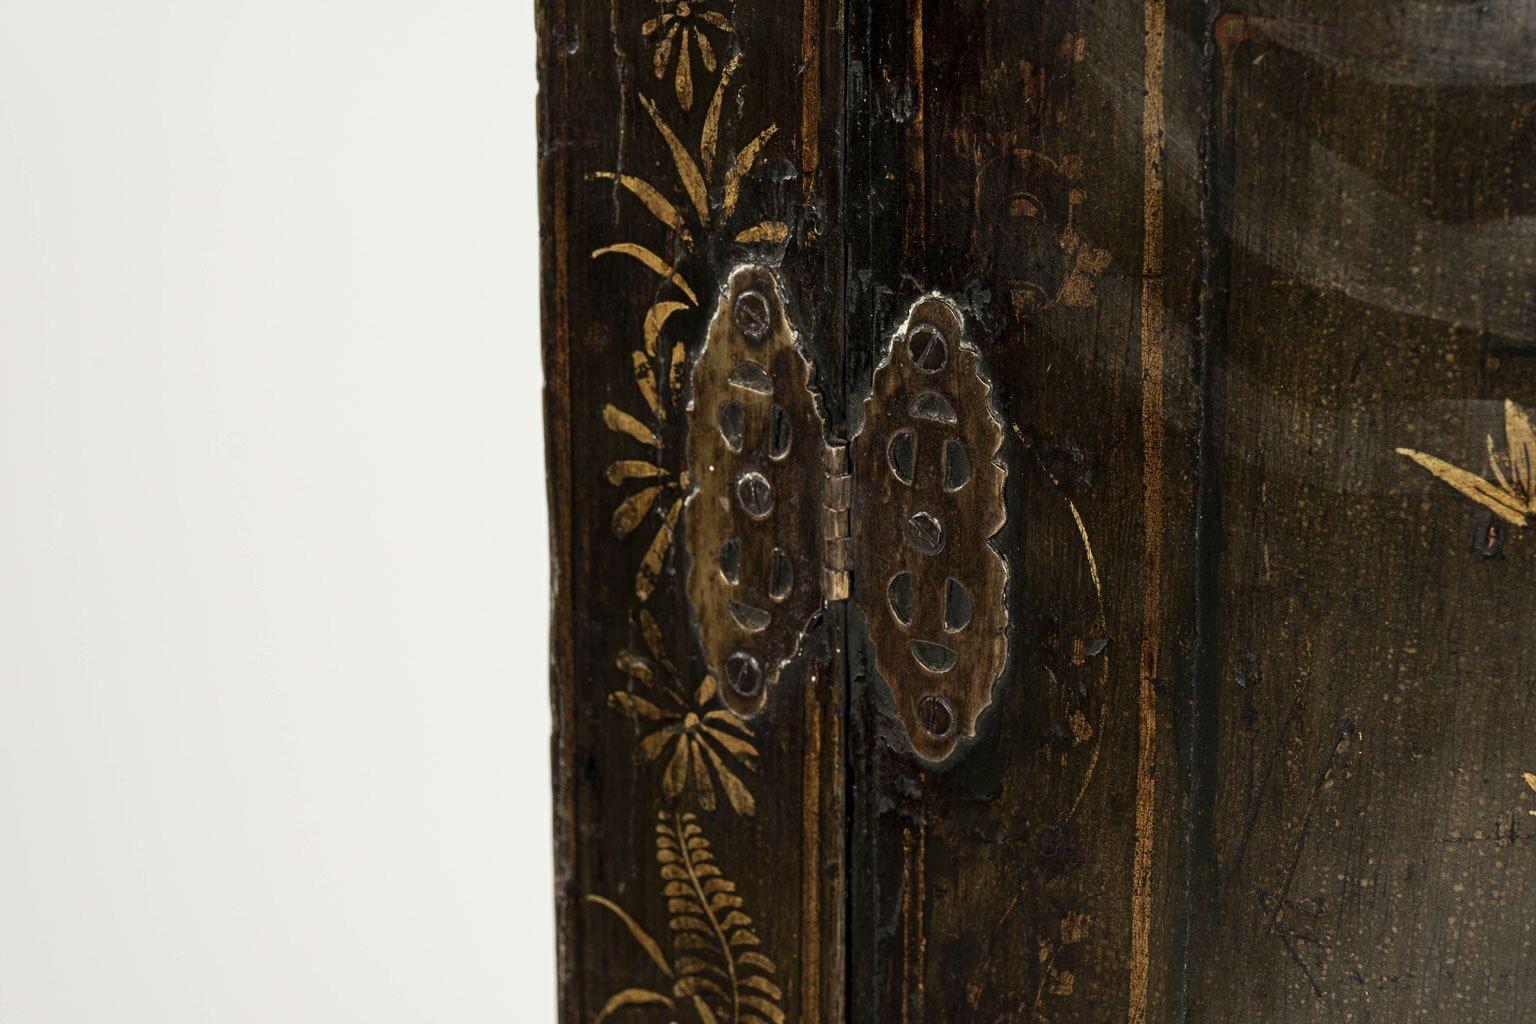 Olivgrüner Chinoiserie-Eckhängeschrank George III aus dem späten 18. Jahrhundert. In ausgezeichnetem Zustand. Originale dunkle, olivgrüne Lackierung mit aufgemalten und eingelegten Gold- und bräunlich-oxbloodroten Verzierungen. Originale oder frühe,